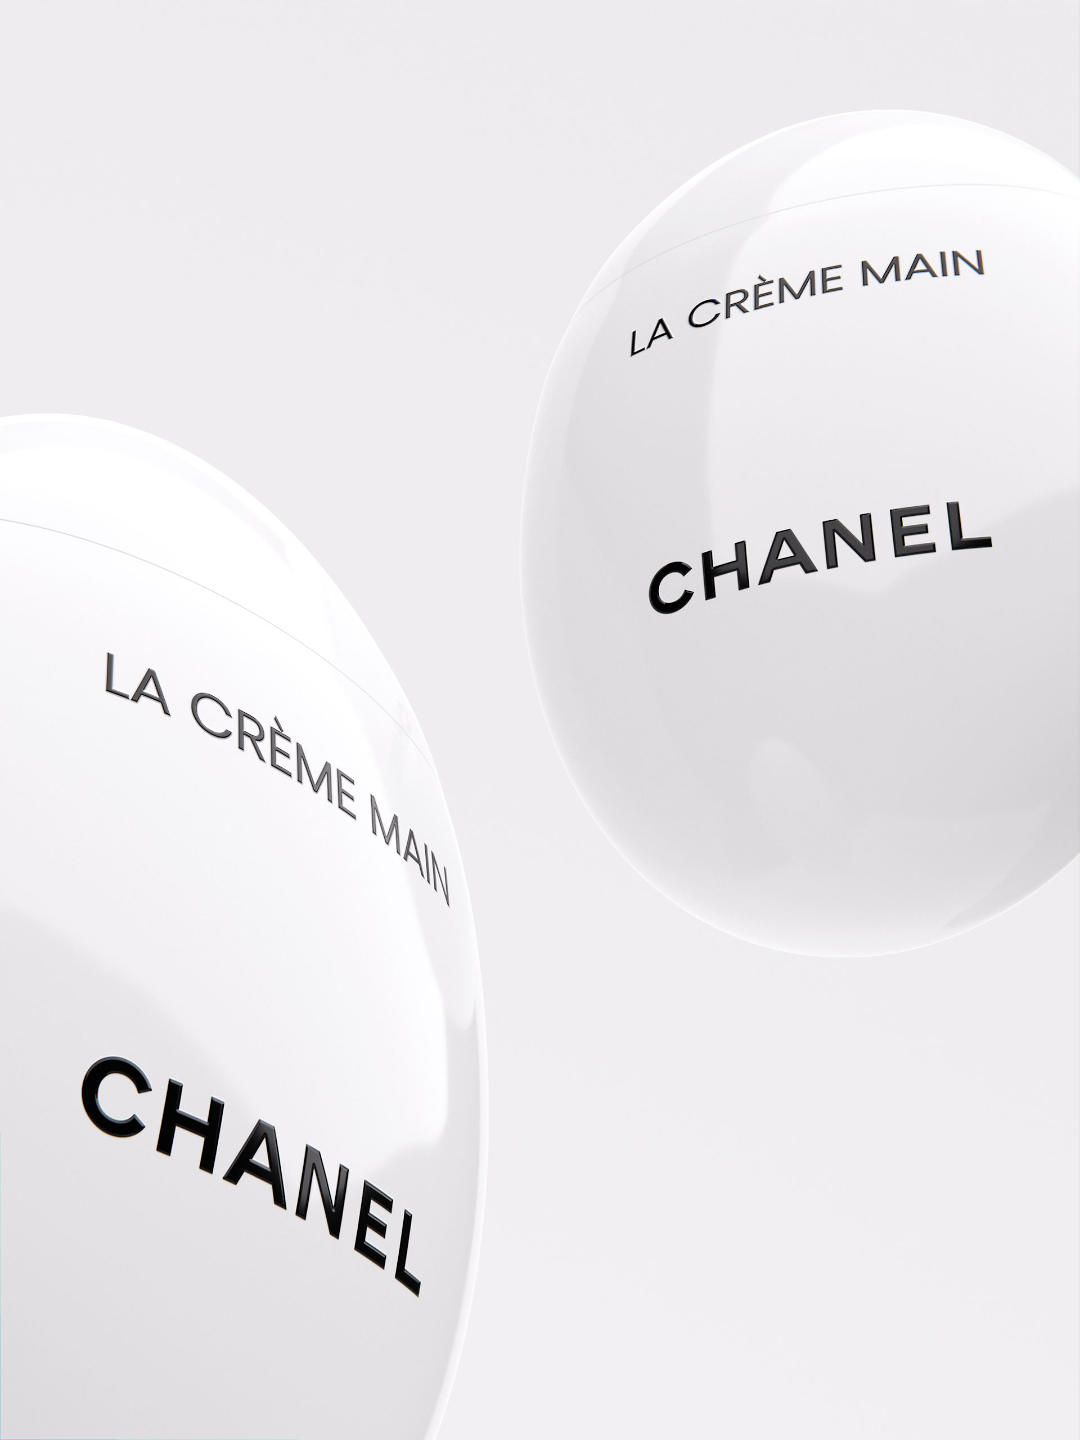 Chanel La Creme Main CGI by Sonny Nguyen x Slate Studio